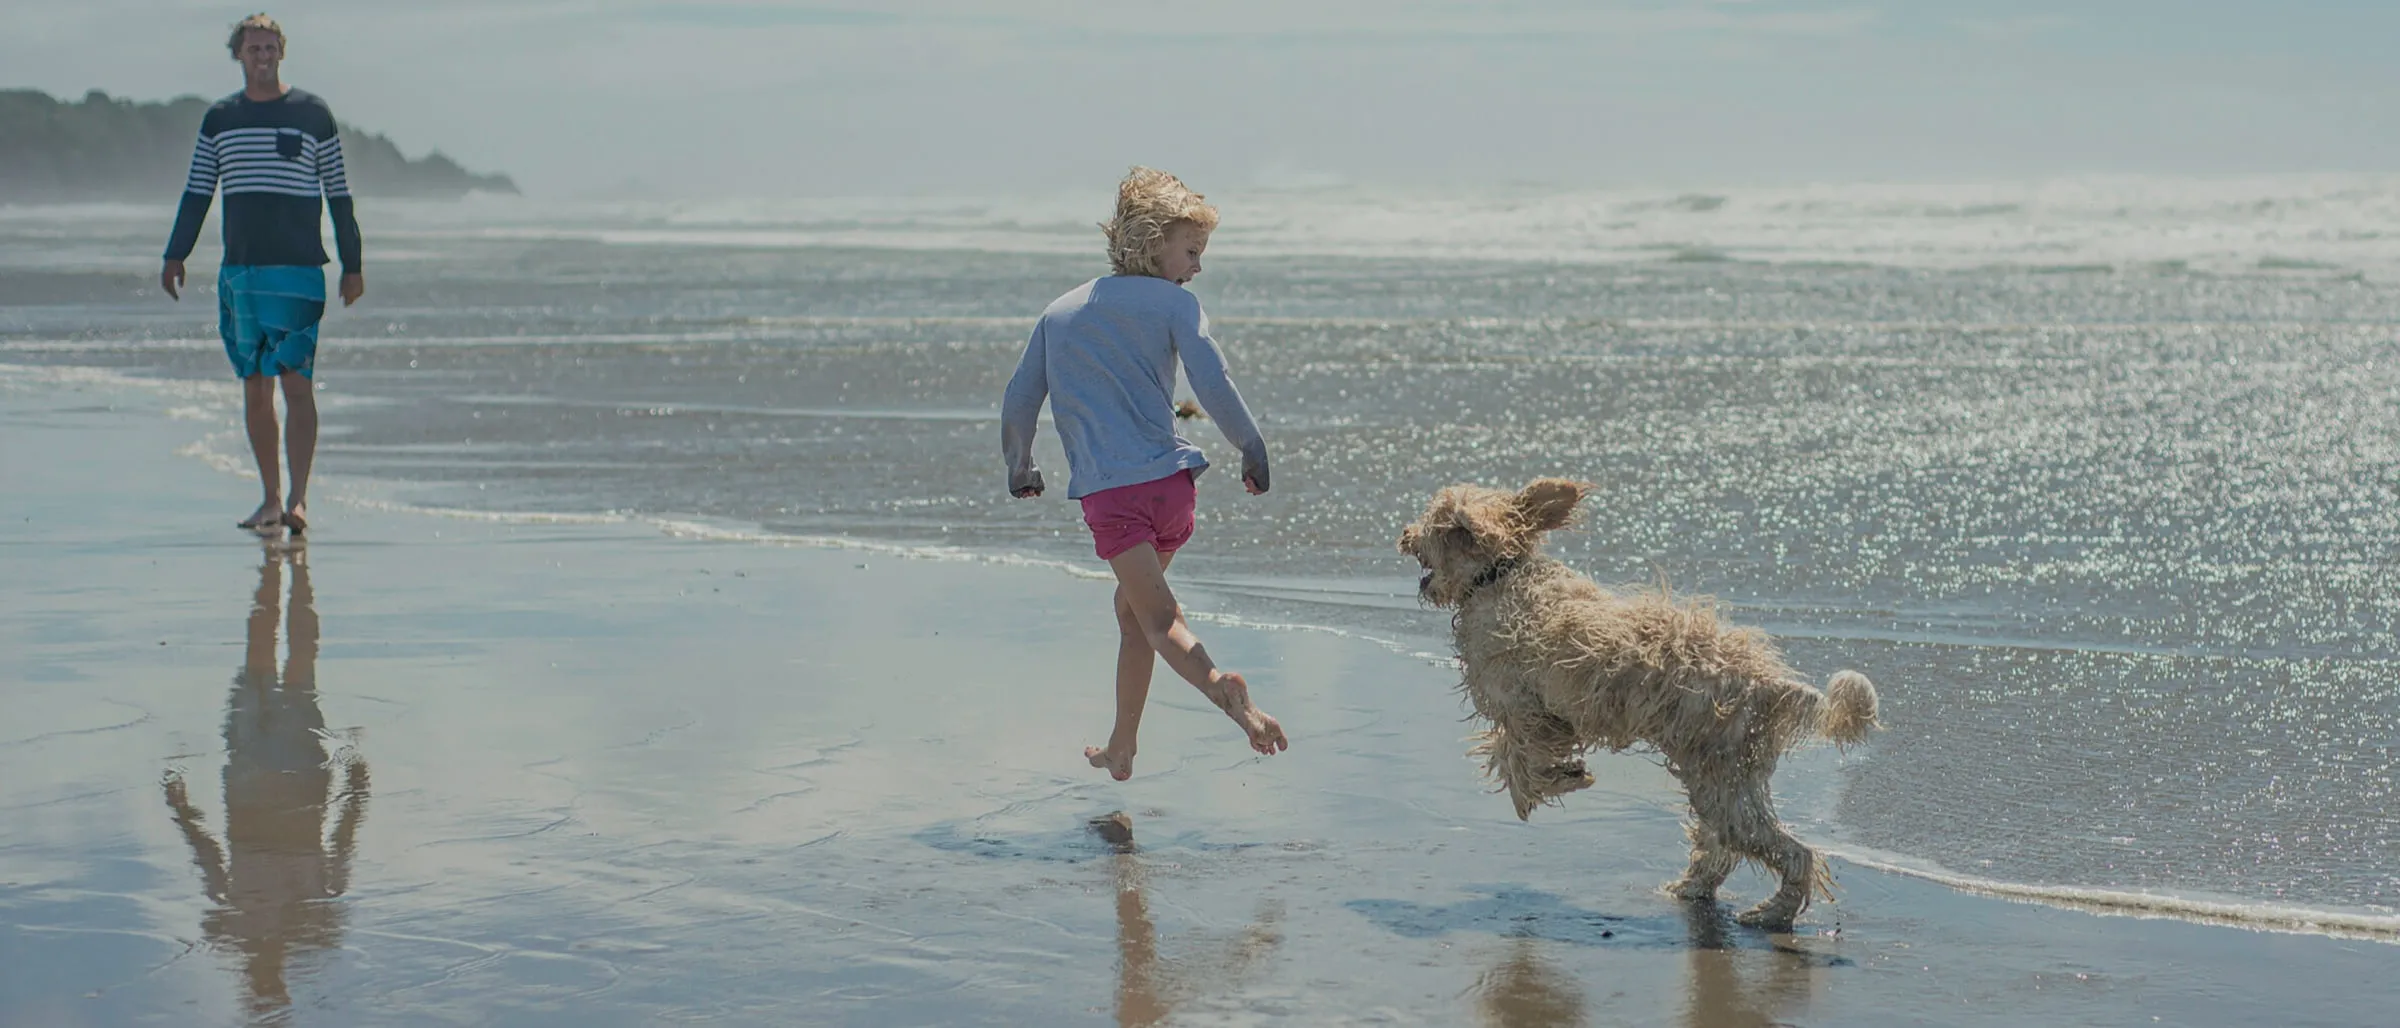 A family run on the beach with a dog